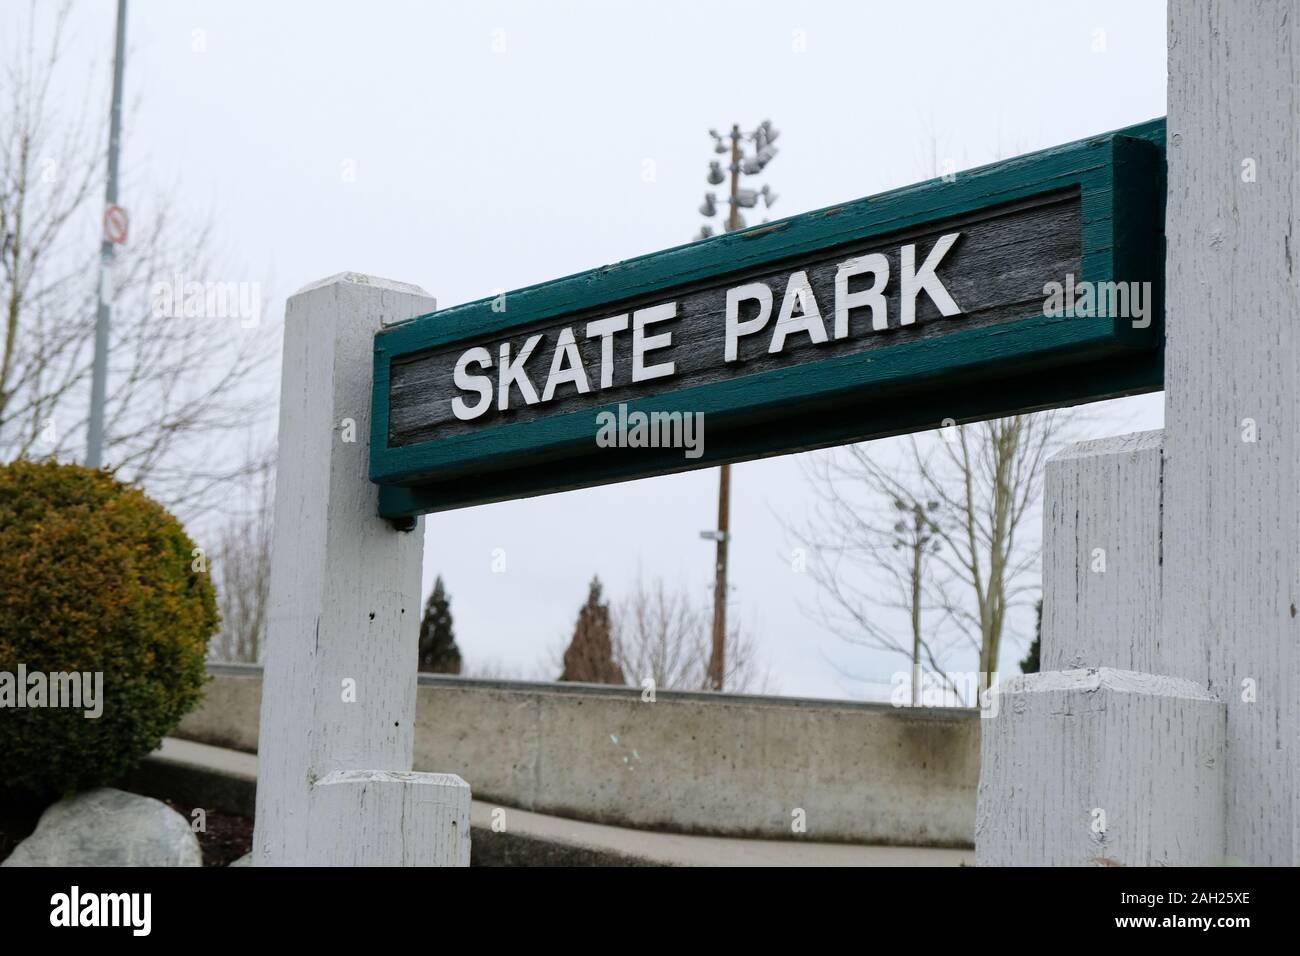 Skate Park sign at a public skating facility in Renton, Washington, USA. Stock Photo